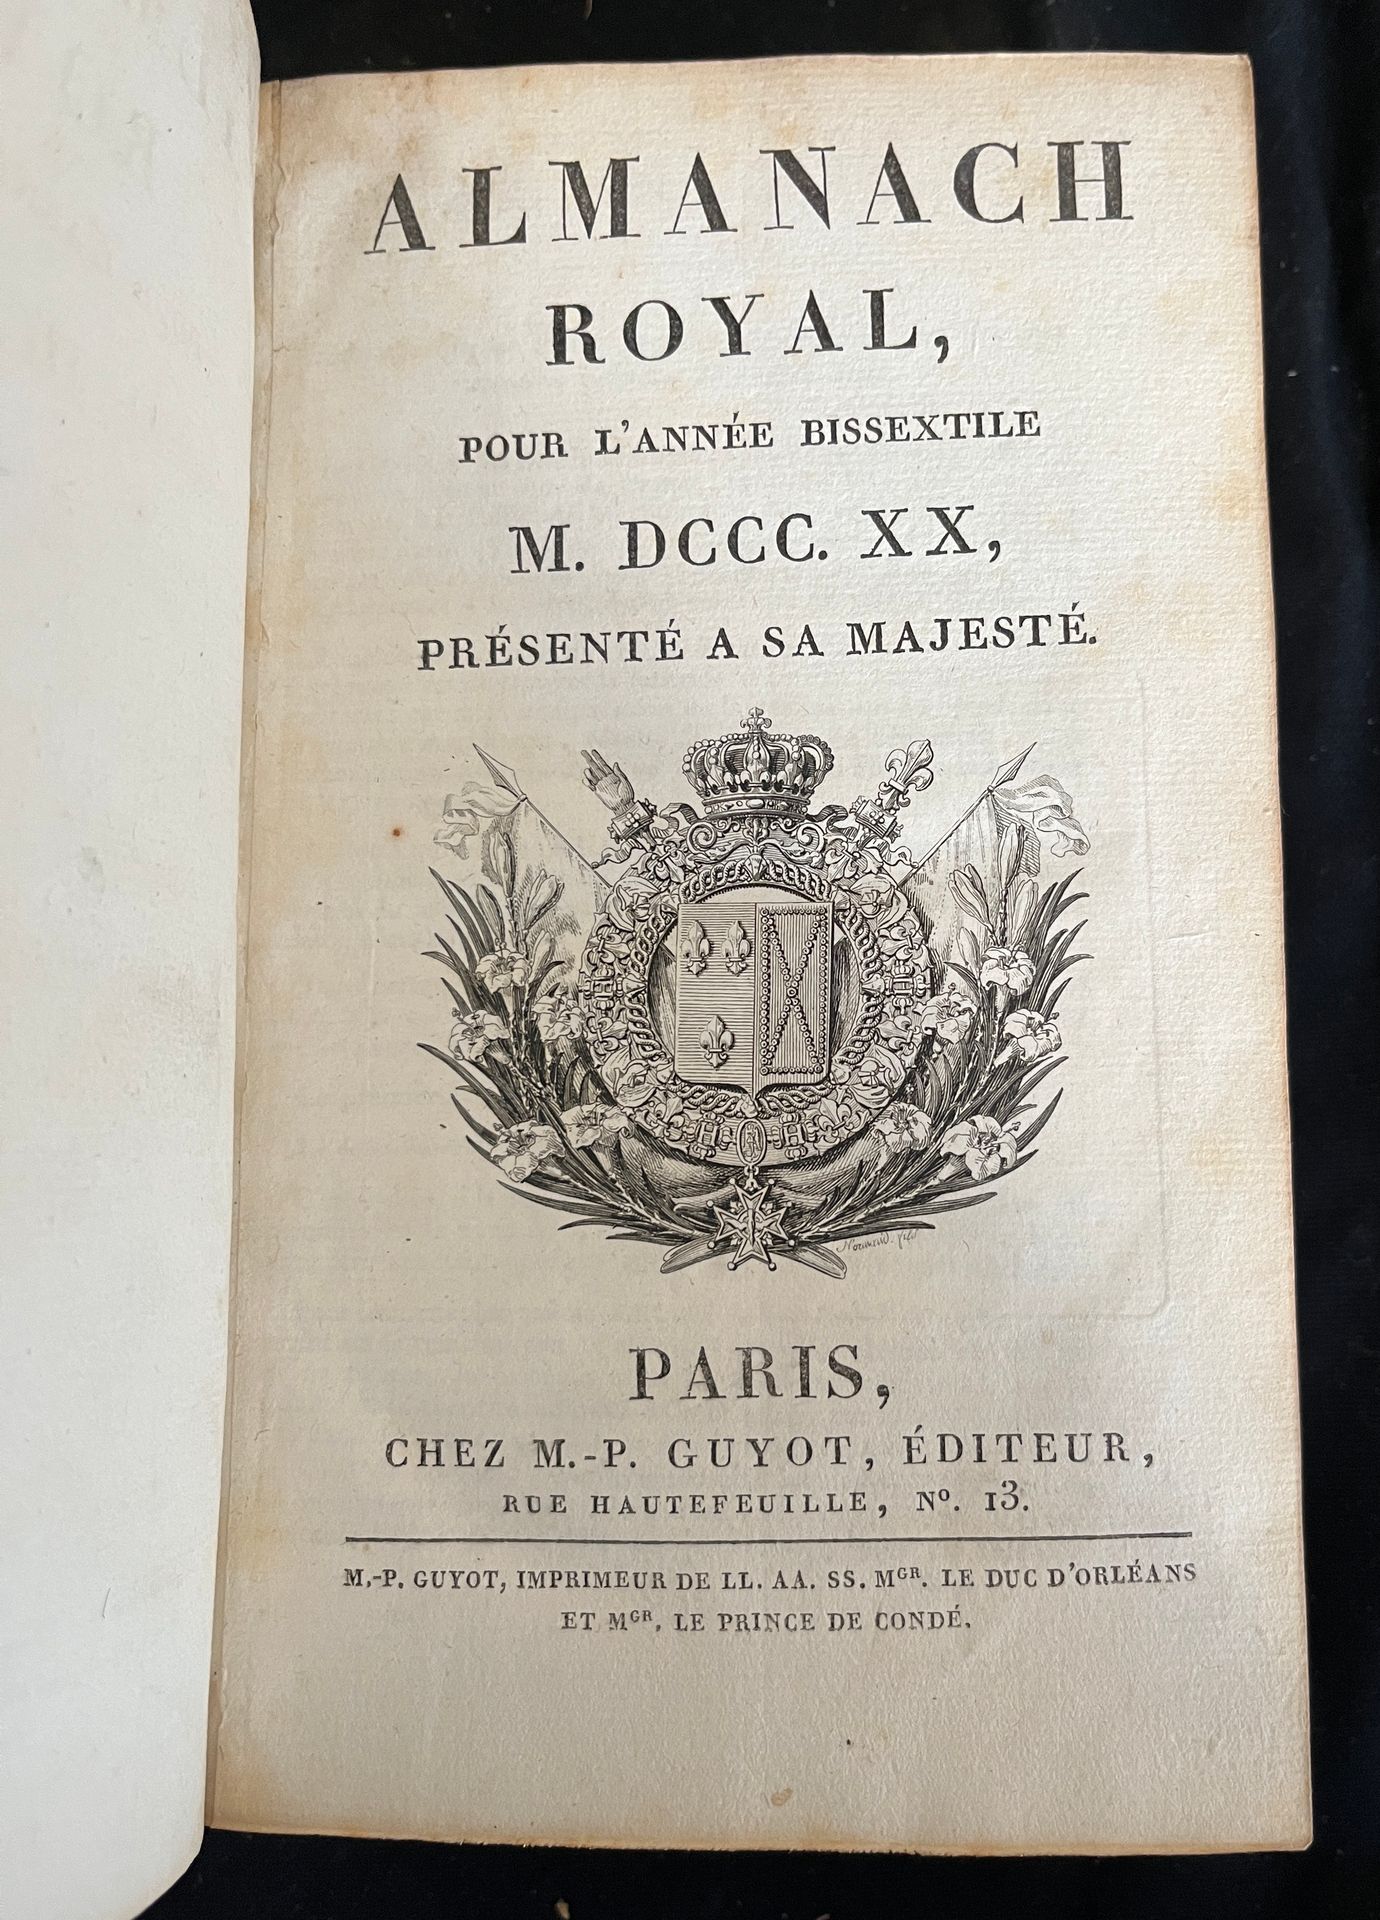 Null [ALMANACH]
Almanach royal pour l'année bissextile 1820. Paris, chez M.-P.Gu&hellip;